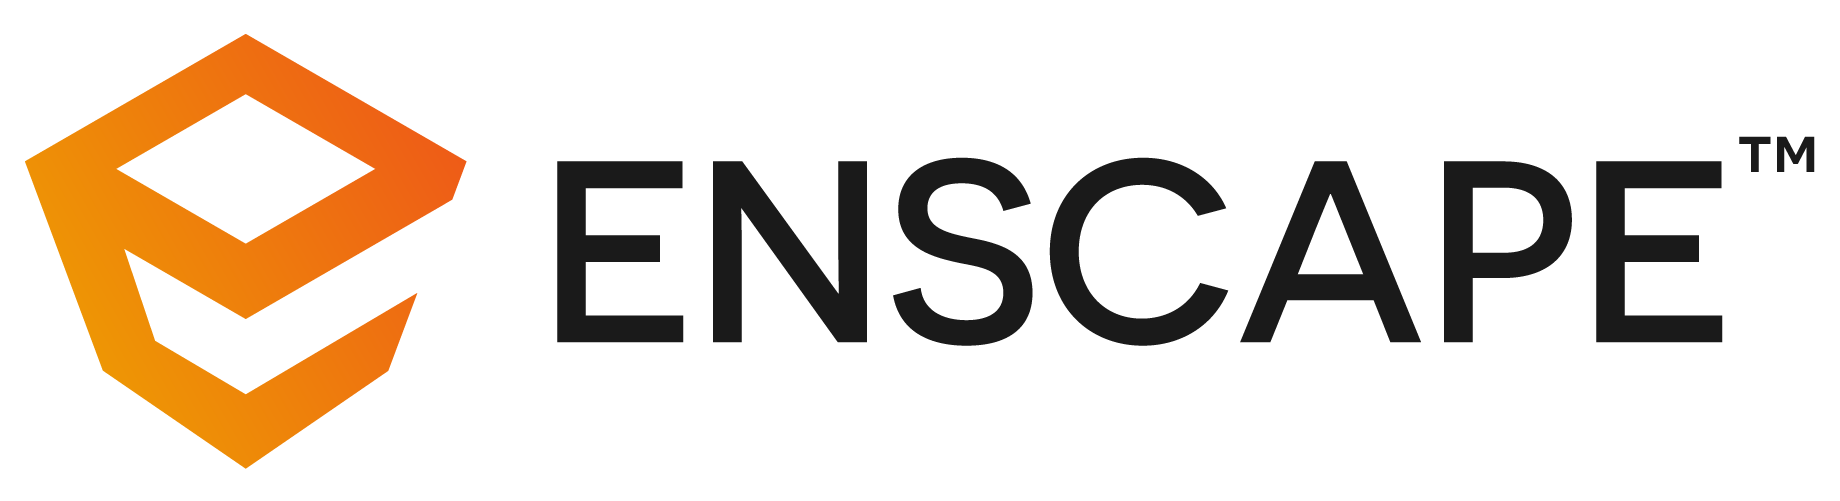 Public Photos / Files - Enscape Logo